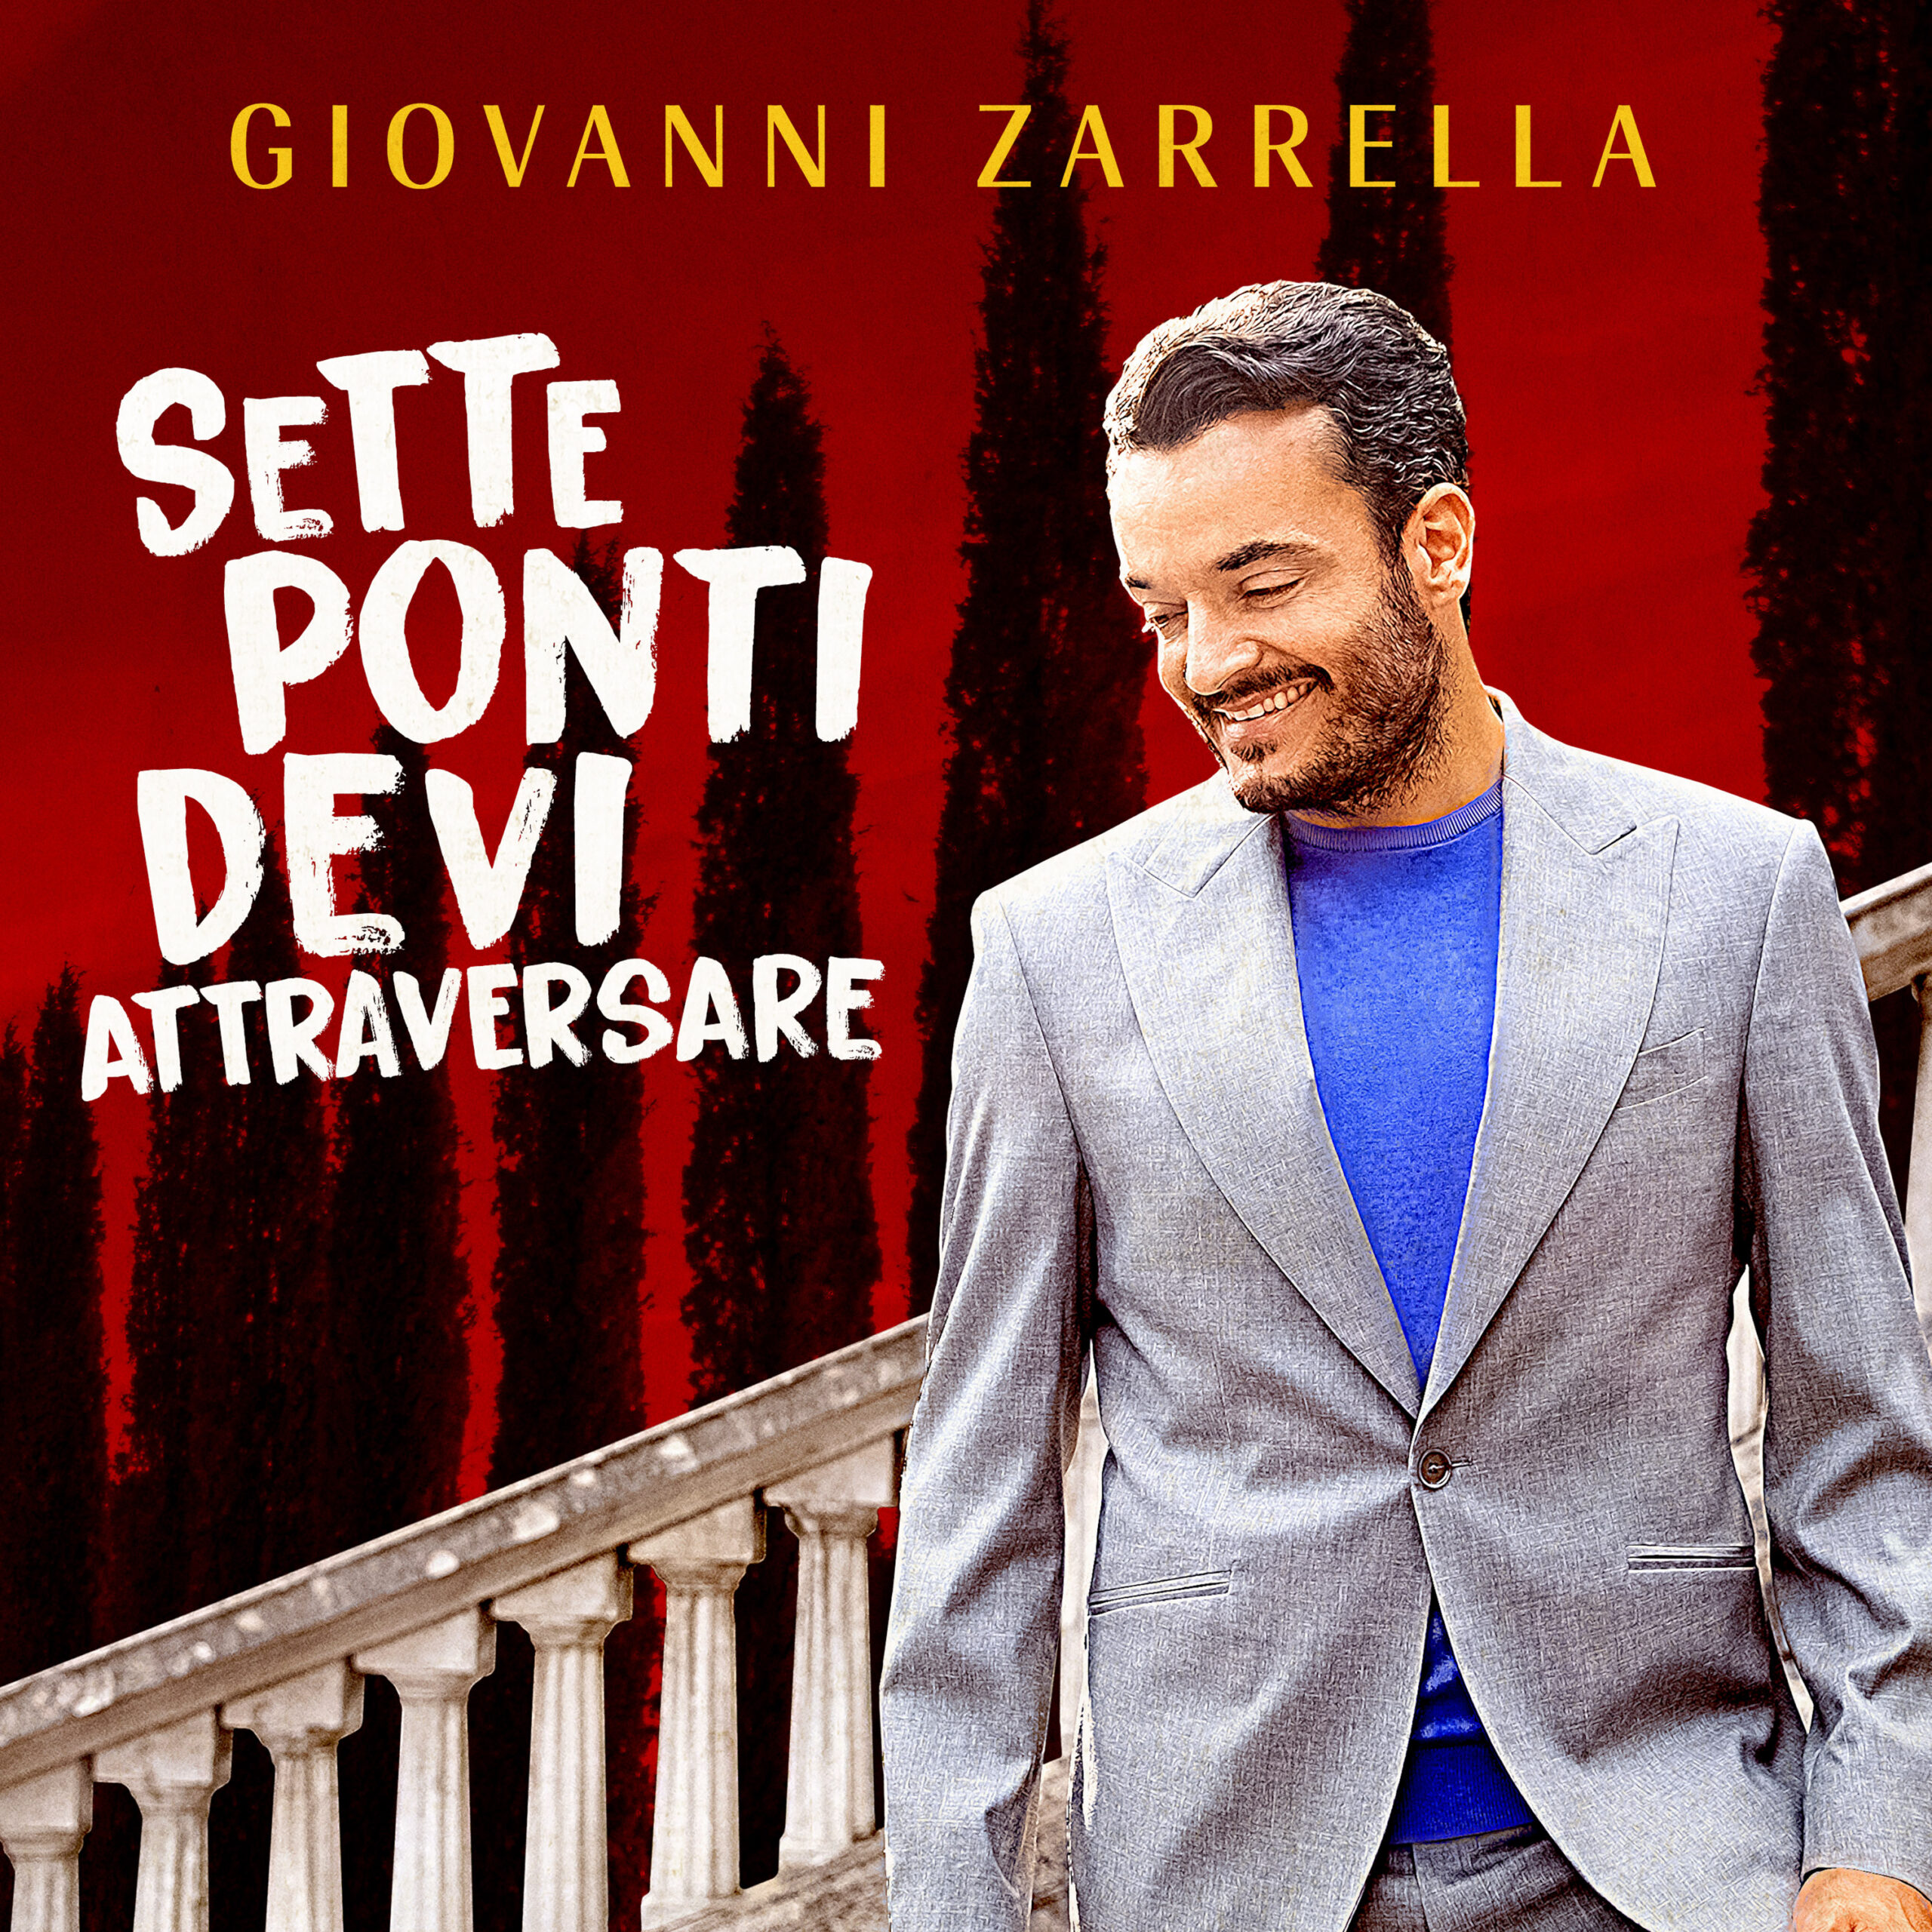 Giovanni Zarrella – die neue Single: „Sette Ponti Devi Attraversare“